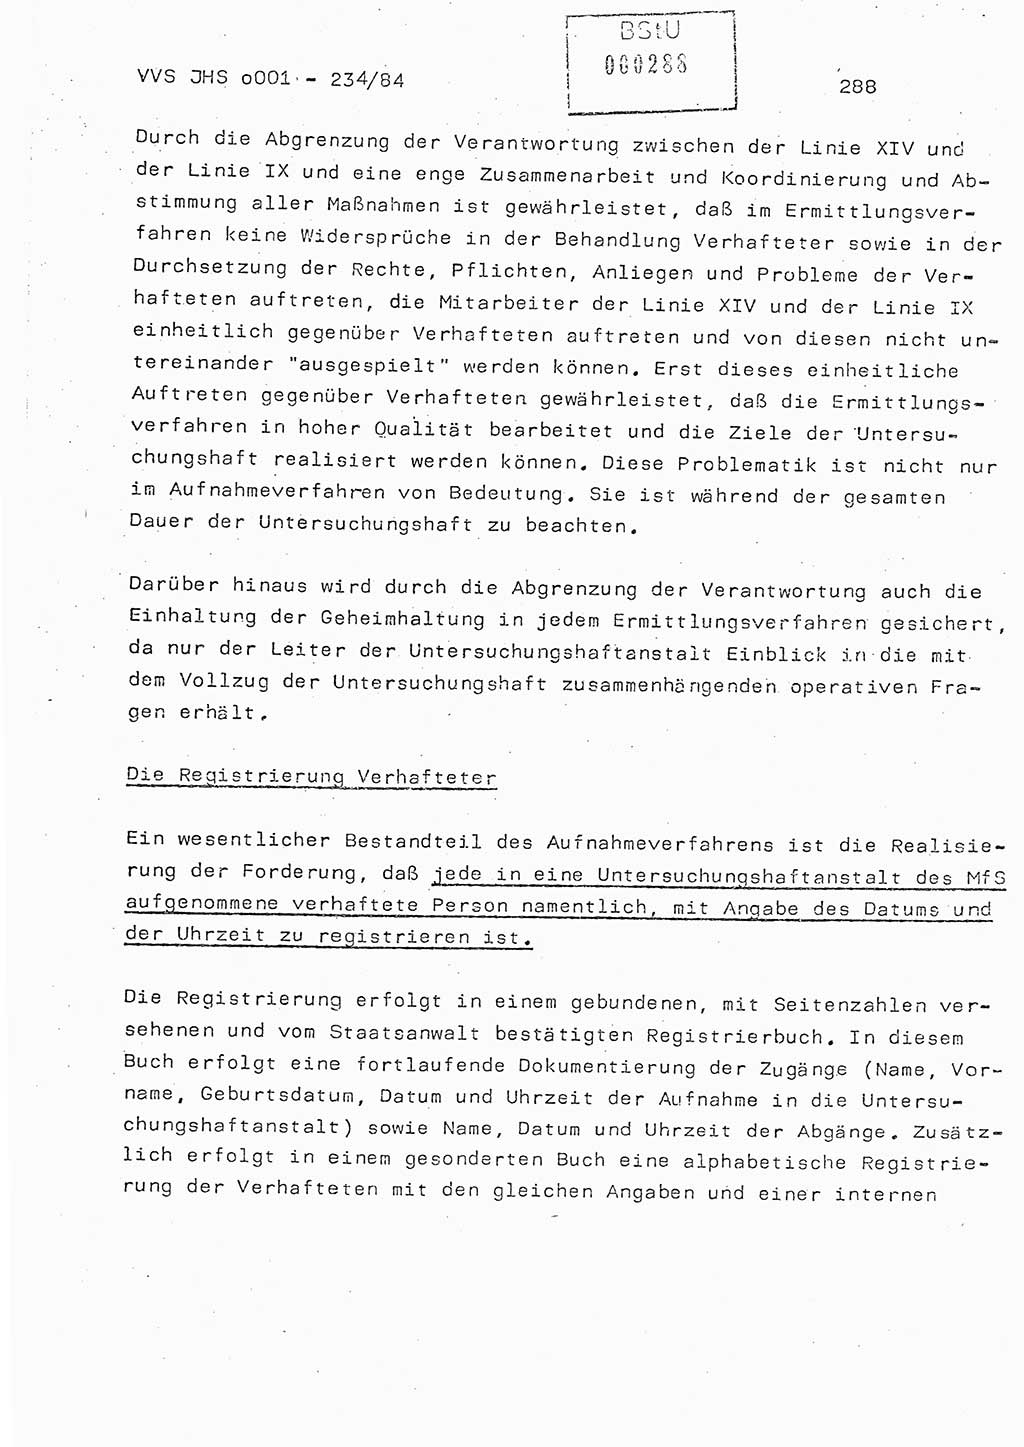 Dissertation Oberst Siegfried Rataizick (Abt. ⅩⅣ), Oberstleutnant Volkmar Heinz (Abt. ⅩⅣ), Oberstleutnant Werner Stein (HA Ⅸ), Hauptmann Heinz Conrad (JHS), Ministerium für Staatssicherheit (MfS) [Deutsche Demokratische Republik (DDR)], Juristische Hochschule (JHS), Vertrauliche Verschlußsache (VVS) o001-234/84, Potsdam 1984, Seite 288 (Diss. MfS DDR JHS VVS o001-234/84 1984, S. 288)